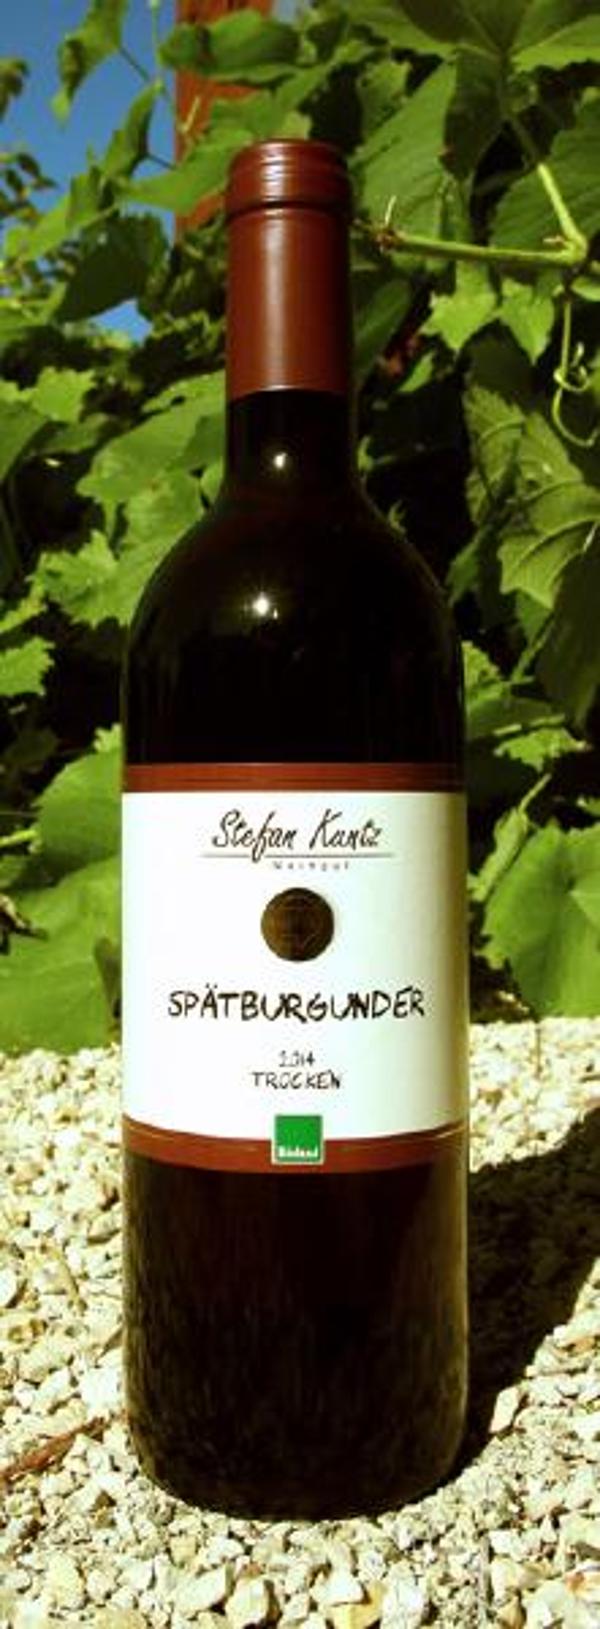 Produktfoto zu Spätburgunder, trocken 0,7ltr, Weingut Kuntz, Pfalz, QbA